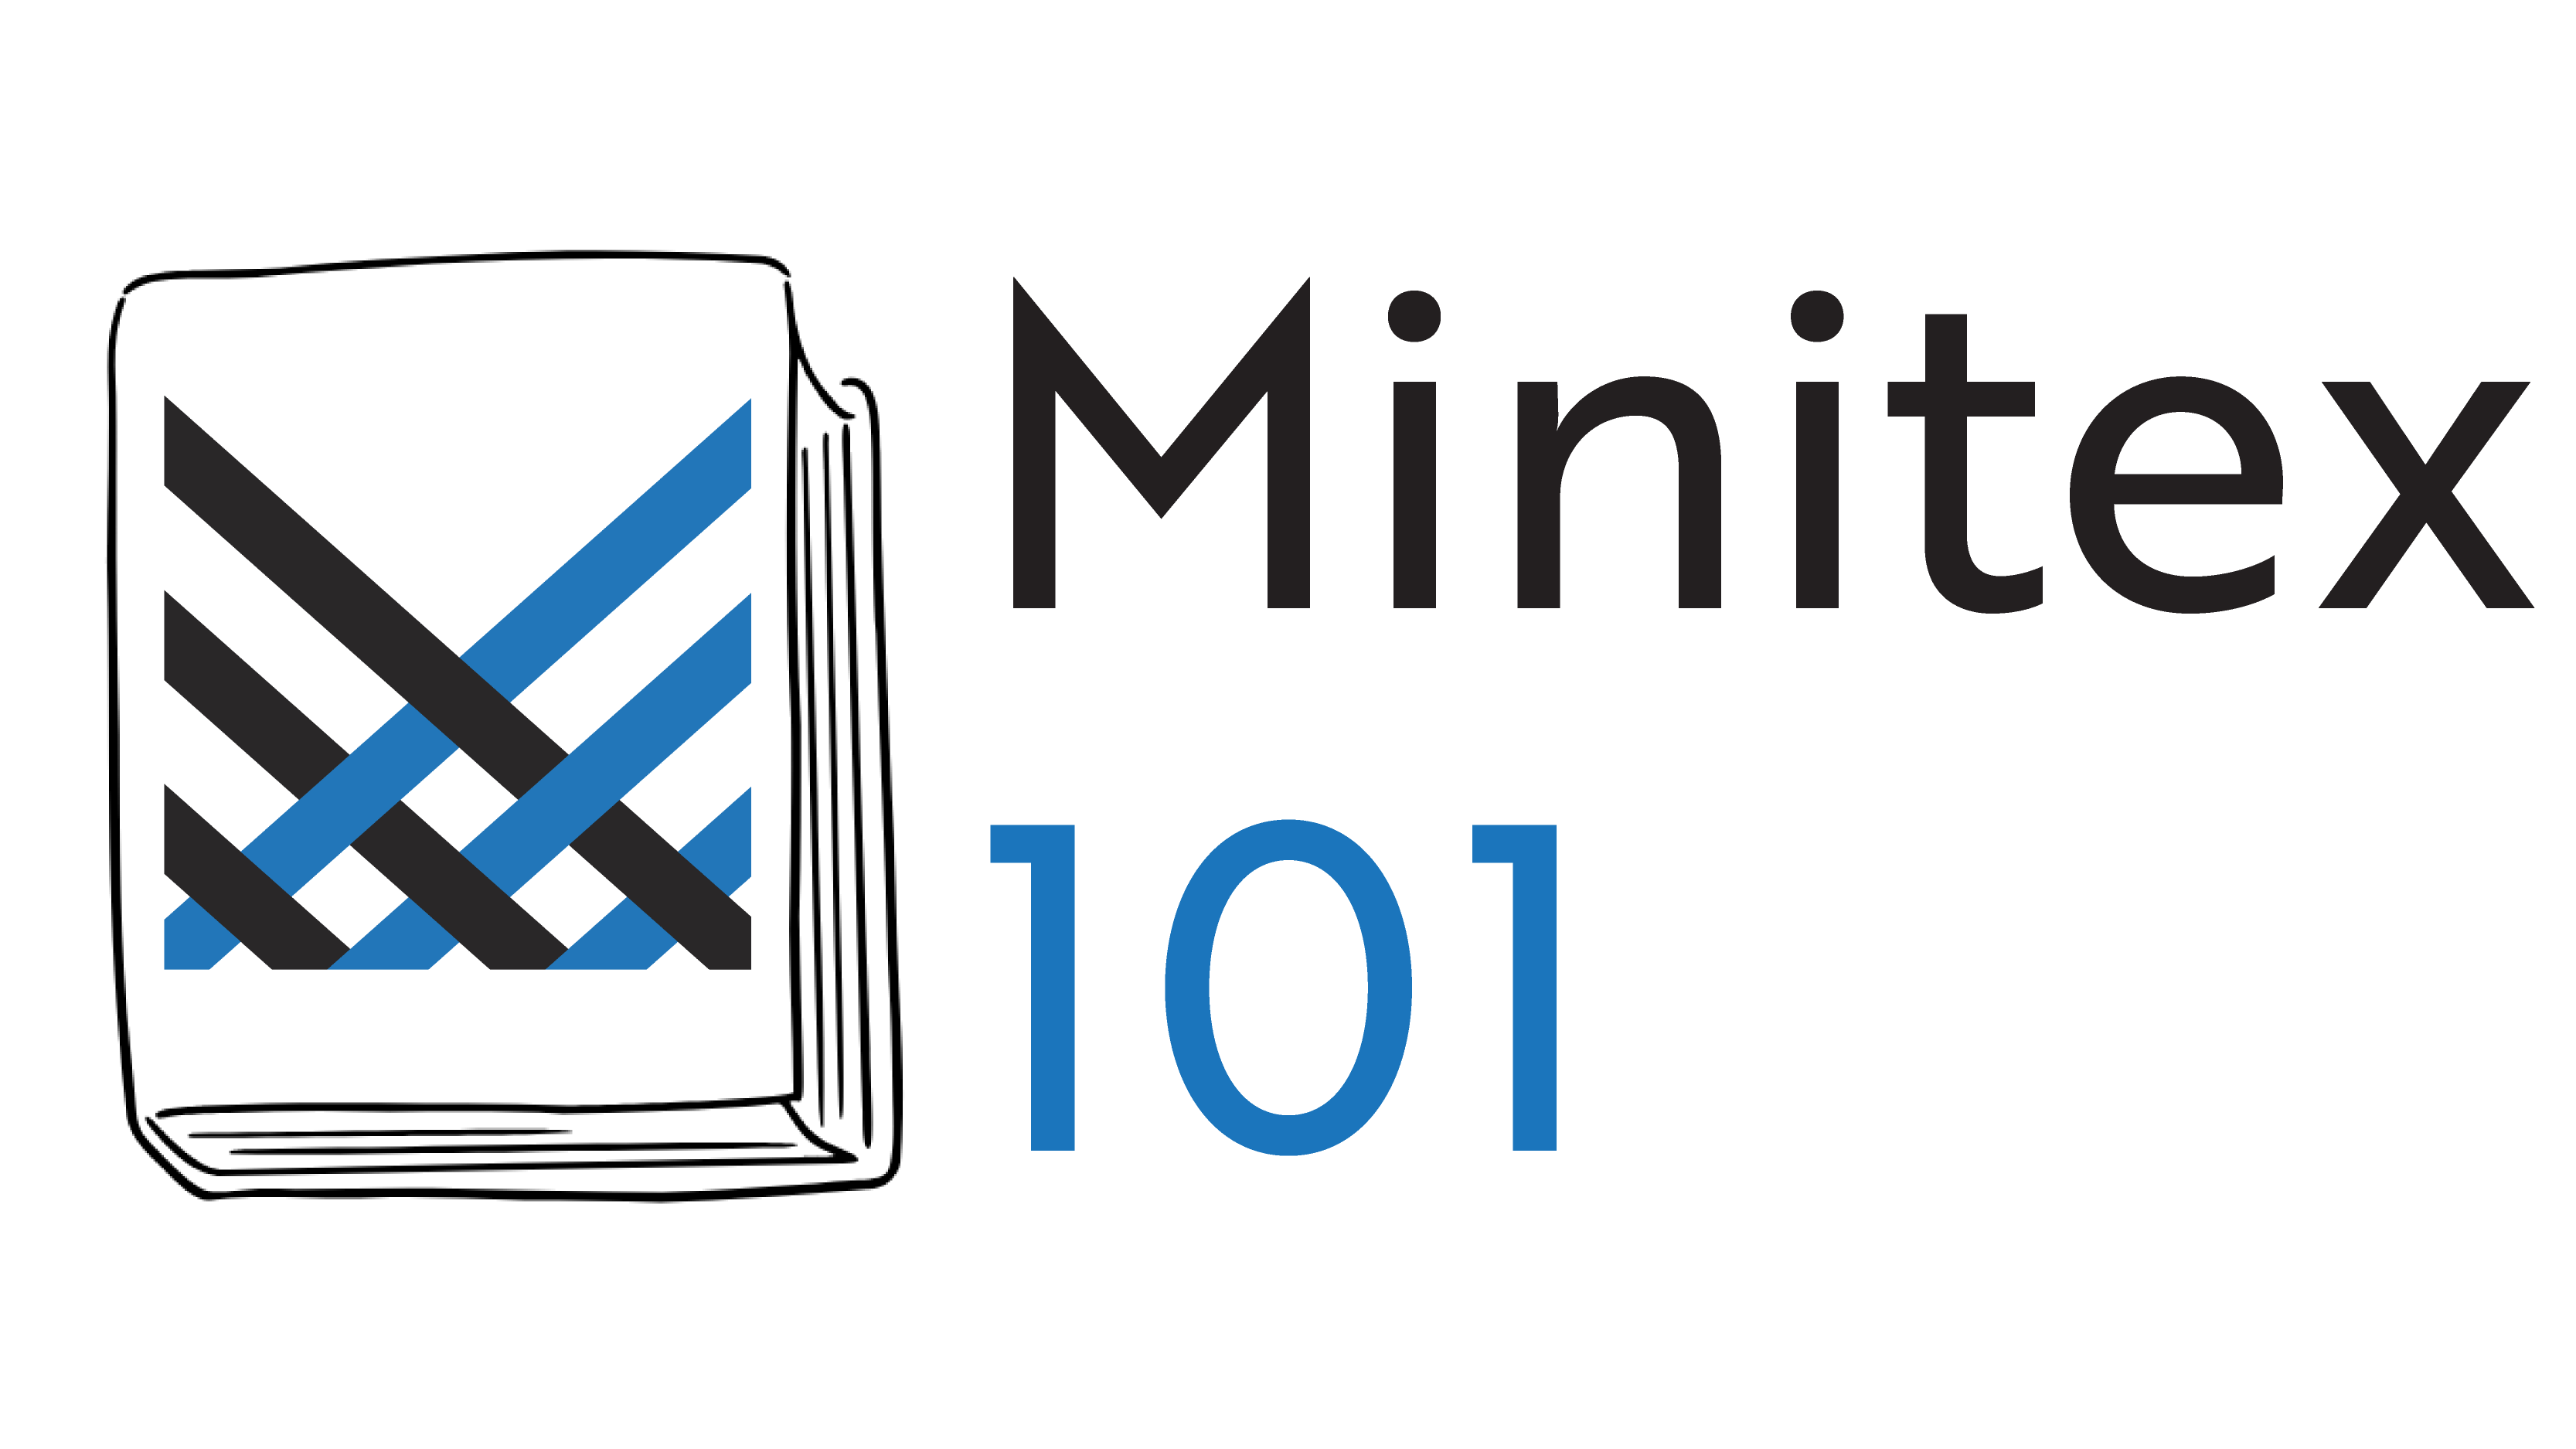 Minitex 101.